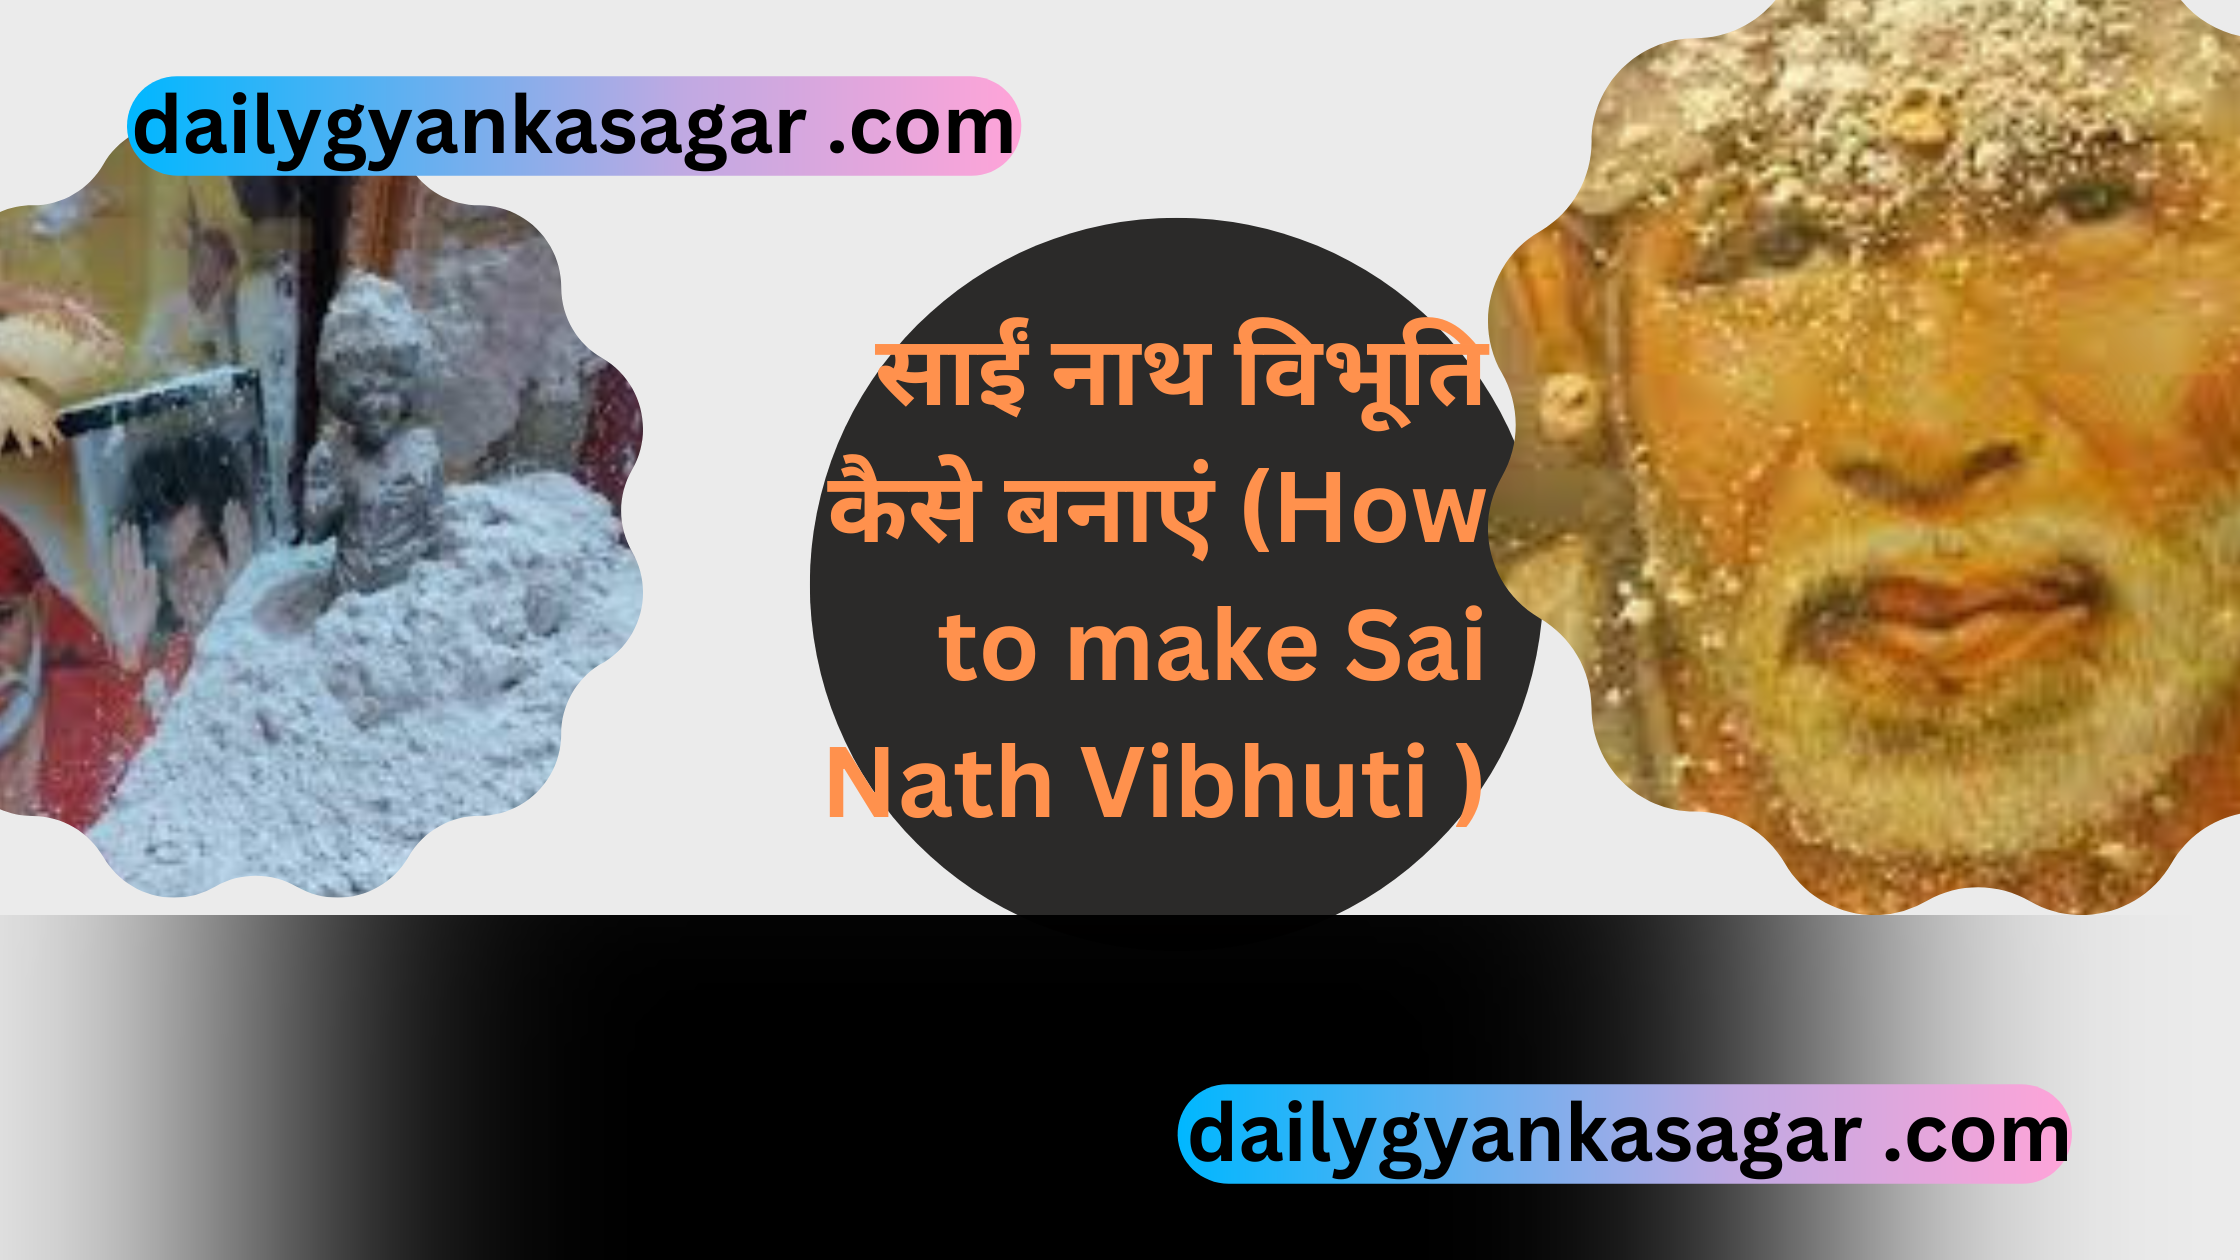 घर में साईं नाथ विभूति कैसे बनाएं (How to make Sai Nath Vibhuti at home)